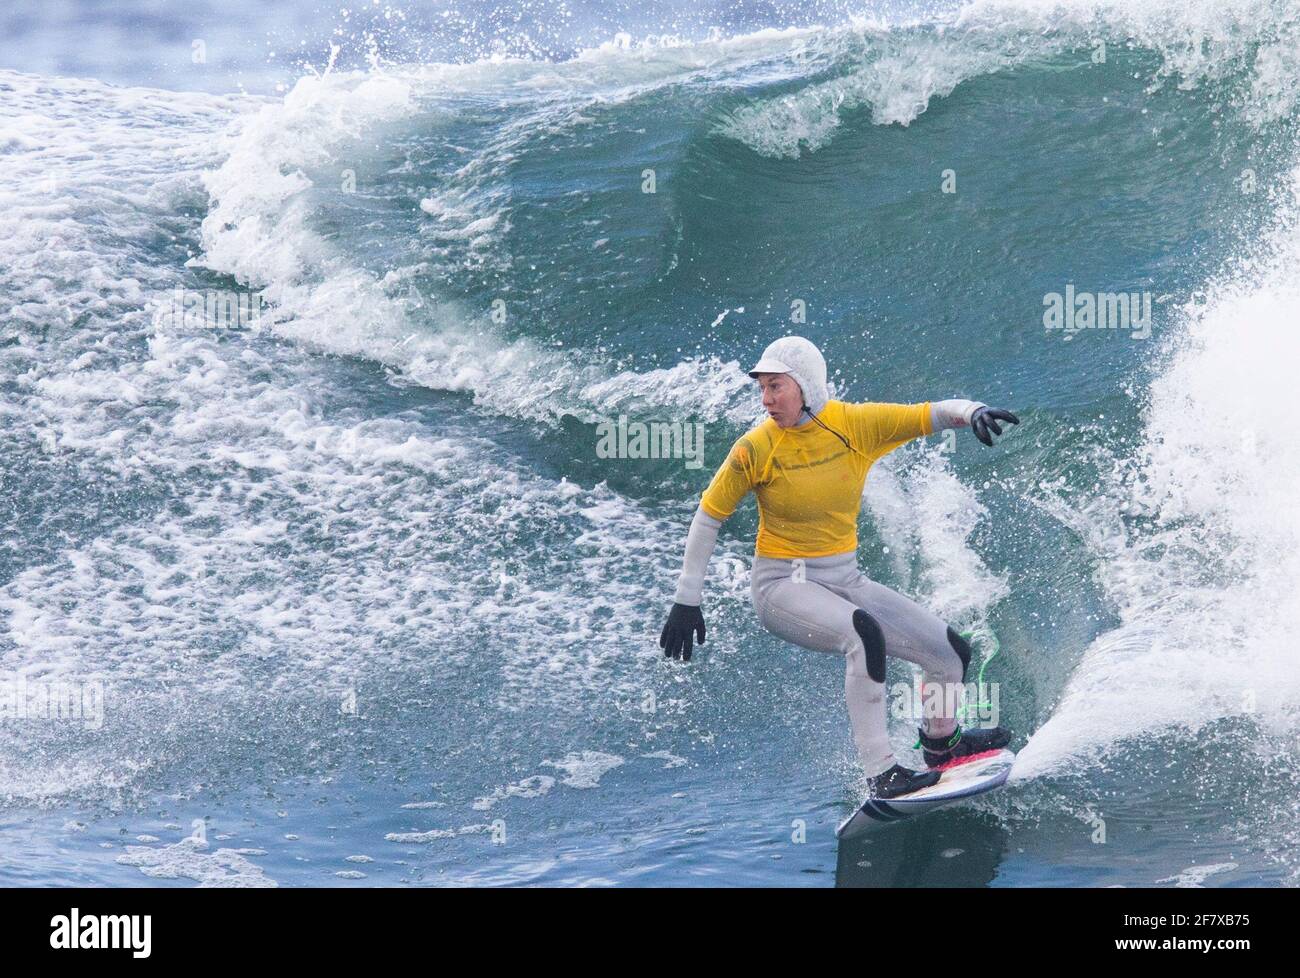 Scotland's Shoana Blackadder durante il primo round femminile del campionato britannico di surf a Thurso East, Caithness. Data immagine: Sabato 10 aprile 2021. Foto Stock